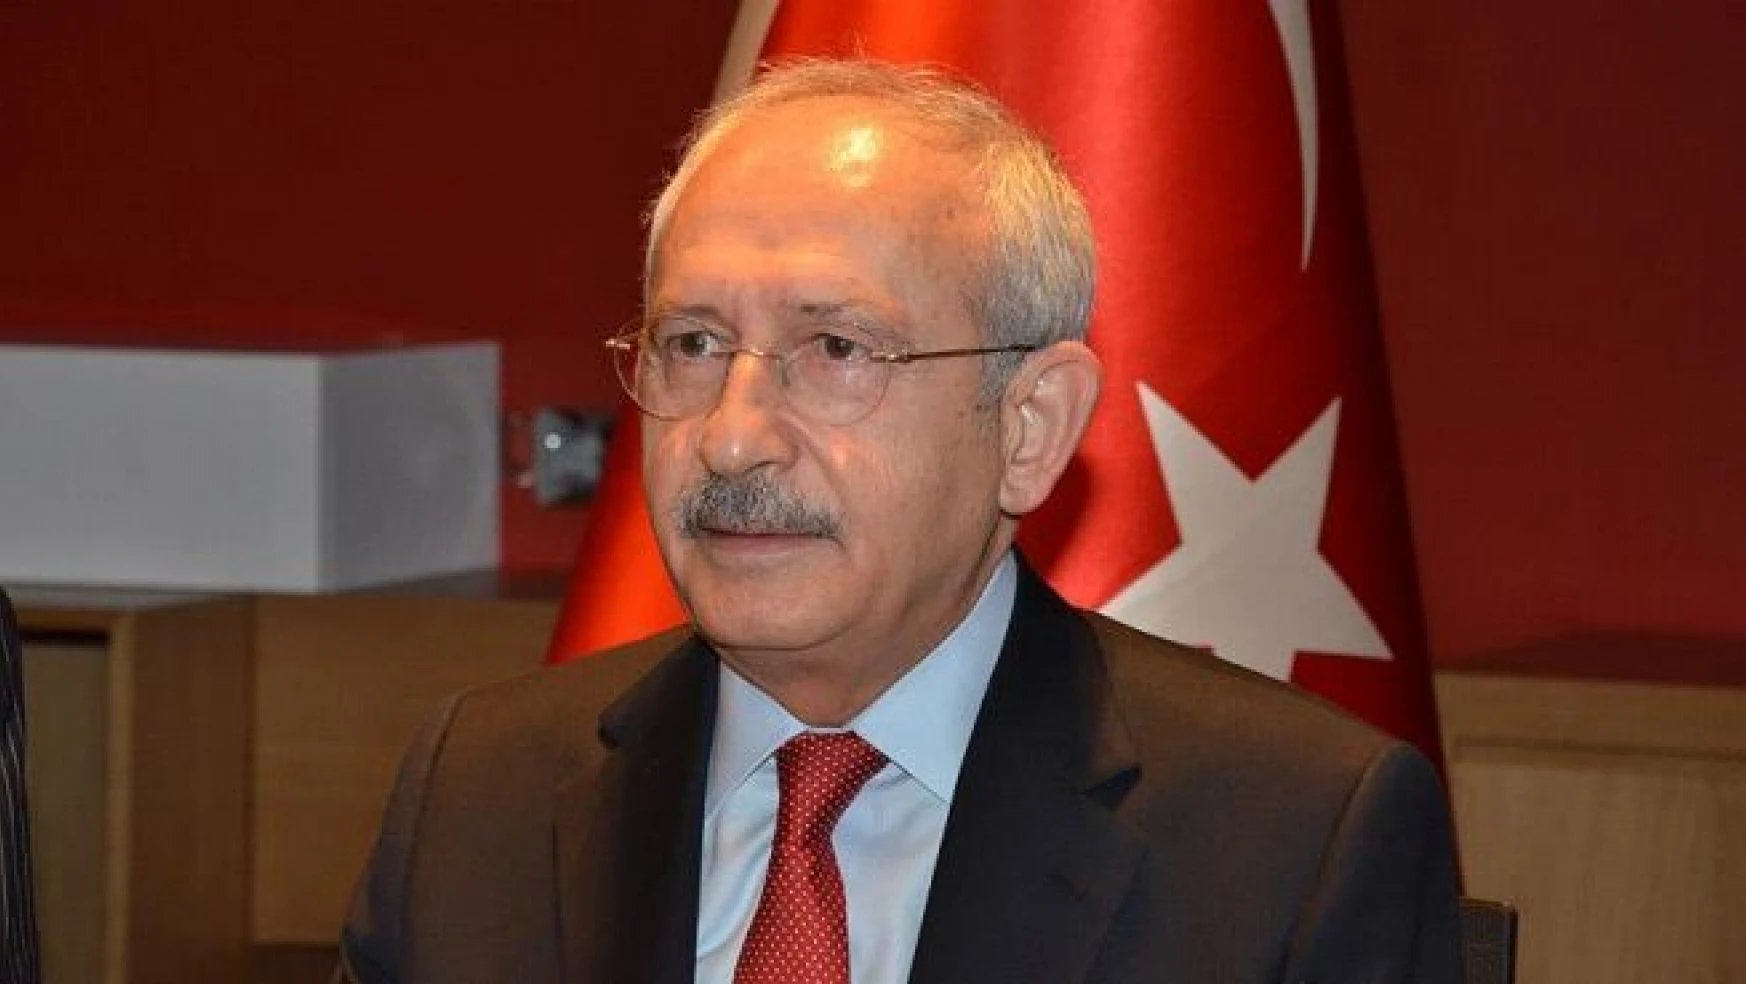 Kılıçdaroğlu, Mevlana törenleri için Konya'da